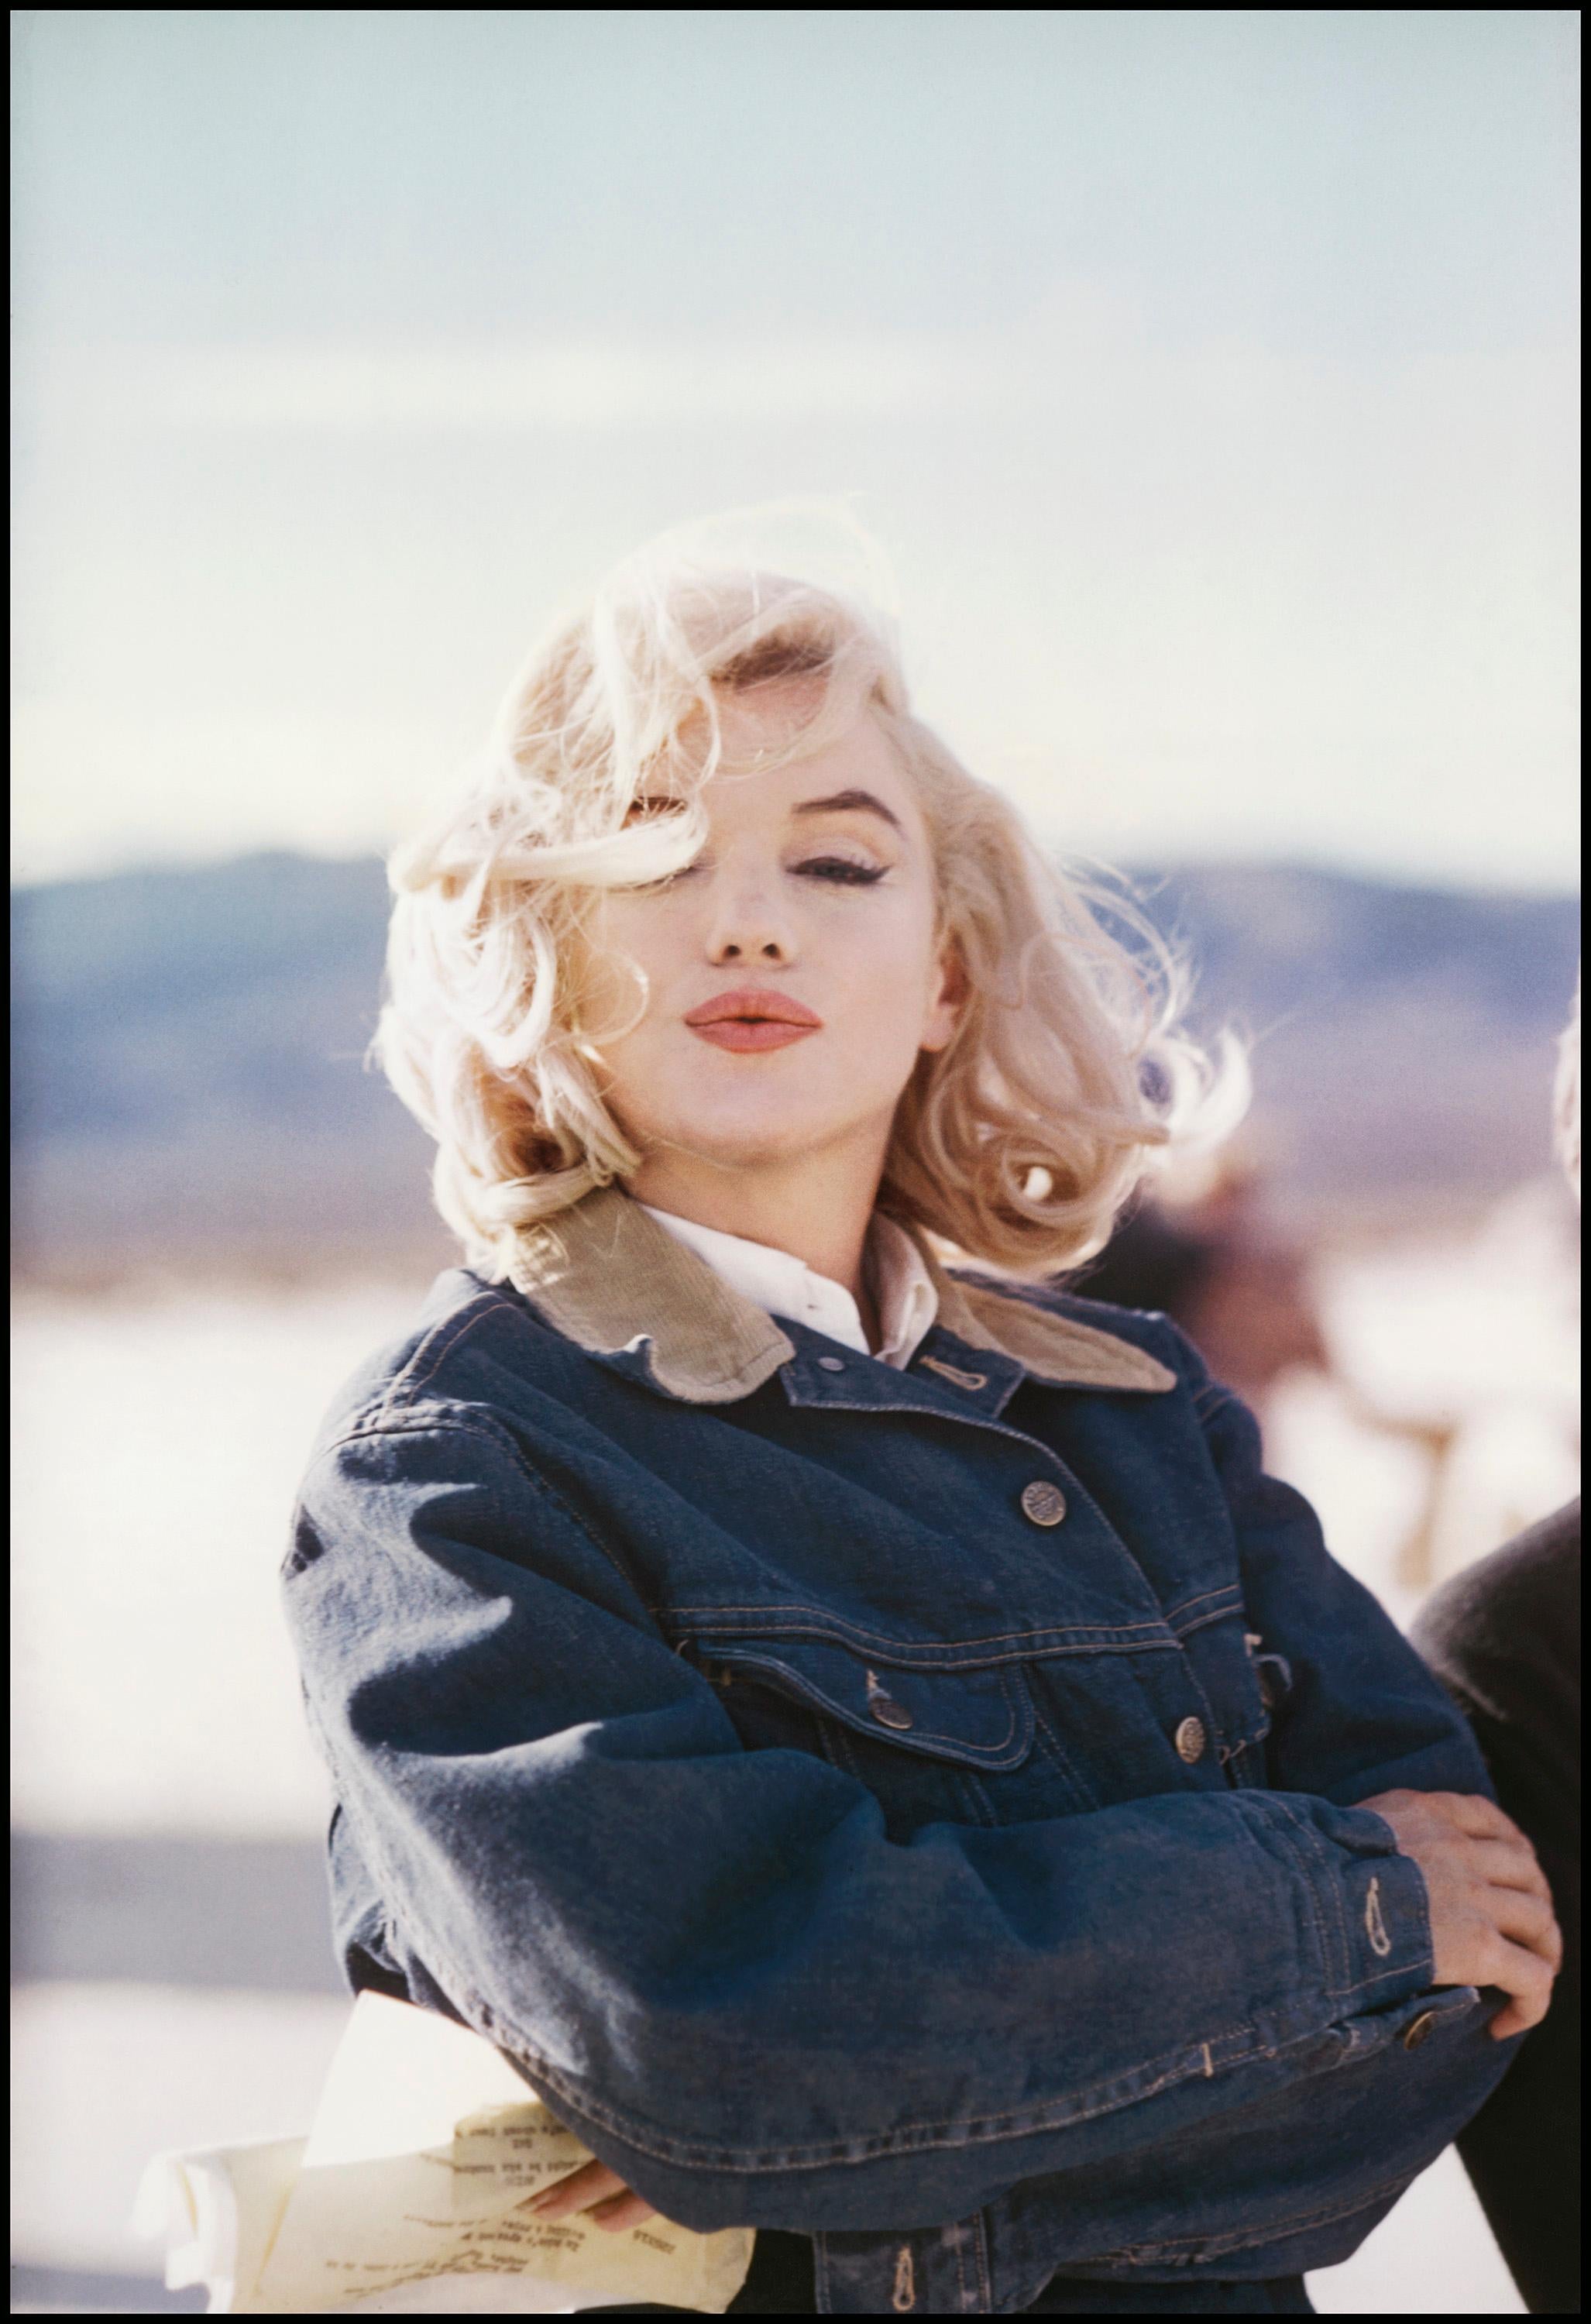 Marilyn Monroe am Set von "The Misfits", Reno, Nevada, 1960.

Alle verfügbaren Größen und Ausgaben:
24" x 20", Auflage 25 + 3 Probedrucke
34" x 24", Auflage 25 + 3 Probedrucke

"Eve Arnold, 1912 als Tochter russischer Einwanderer in Philadelphia